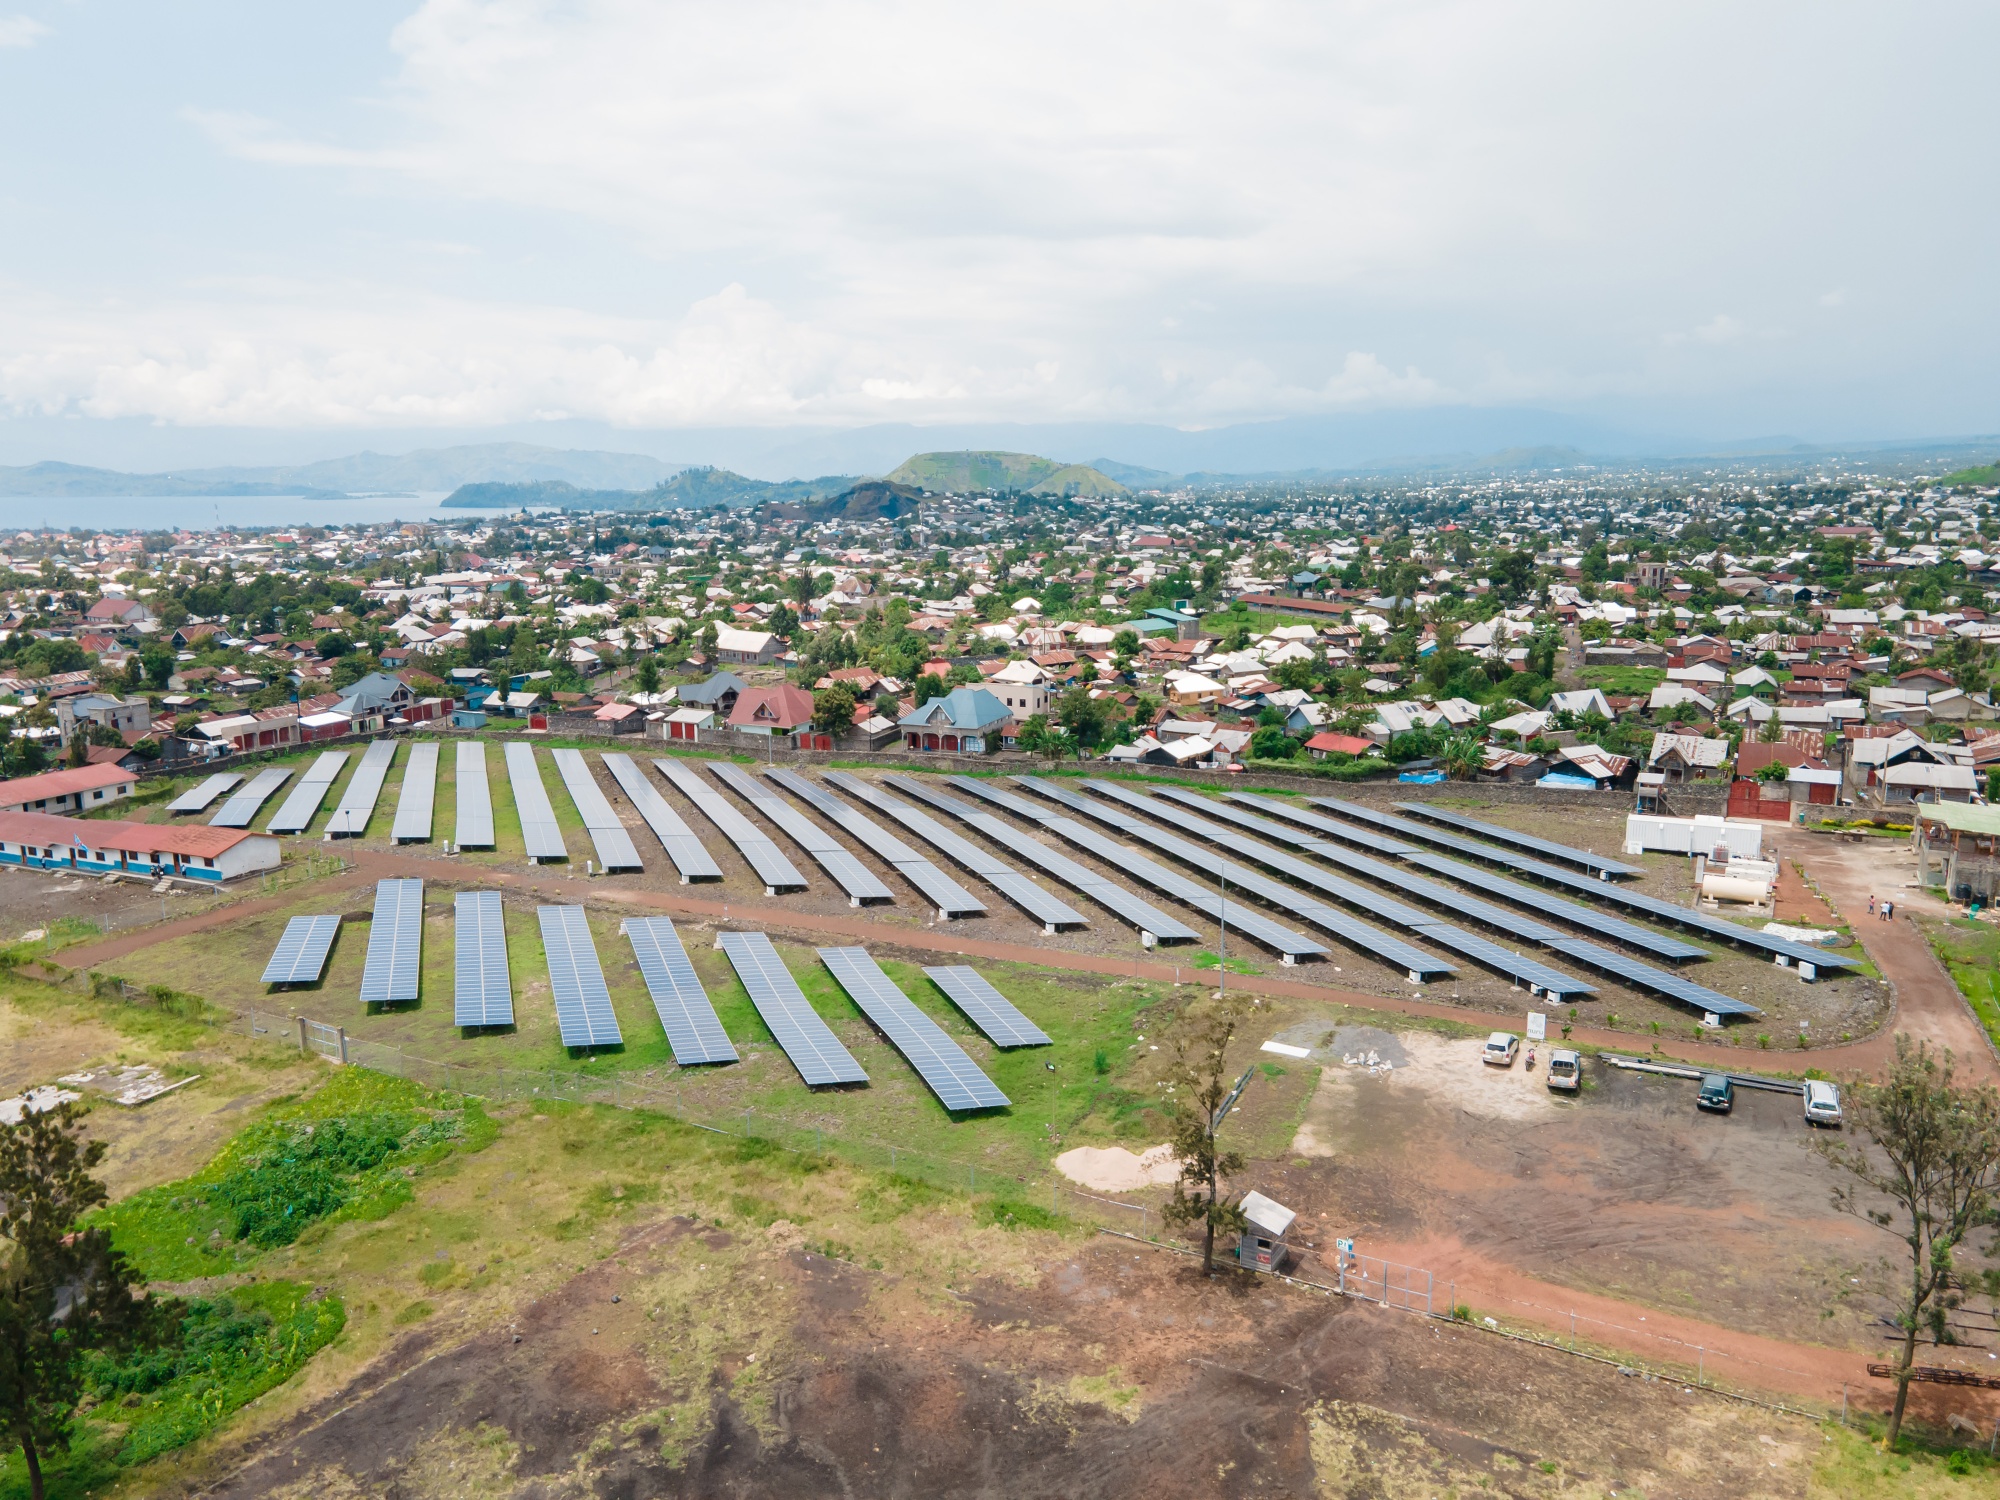 Solar panels at Nuru’s mini-grid site in Goma.